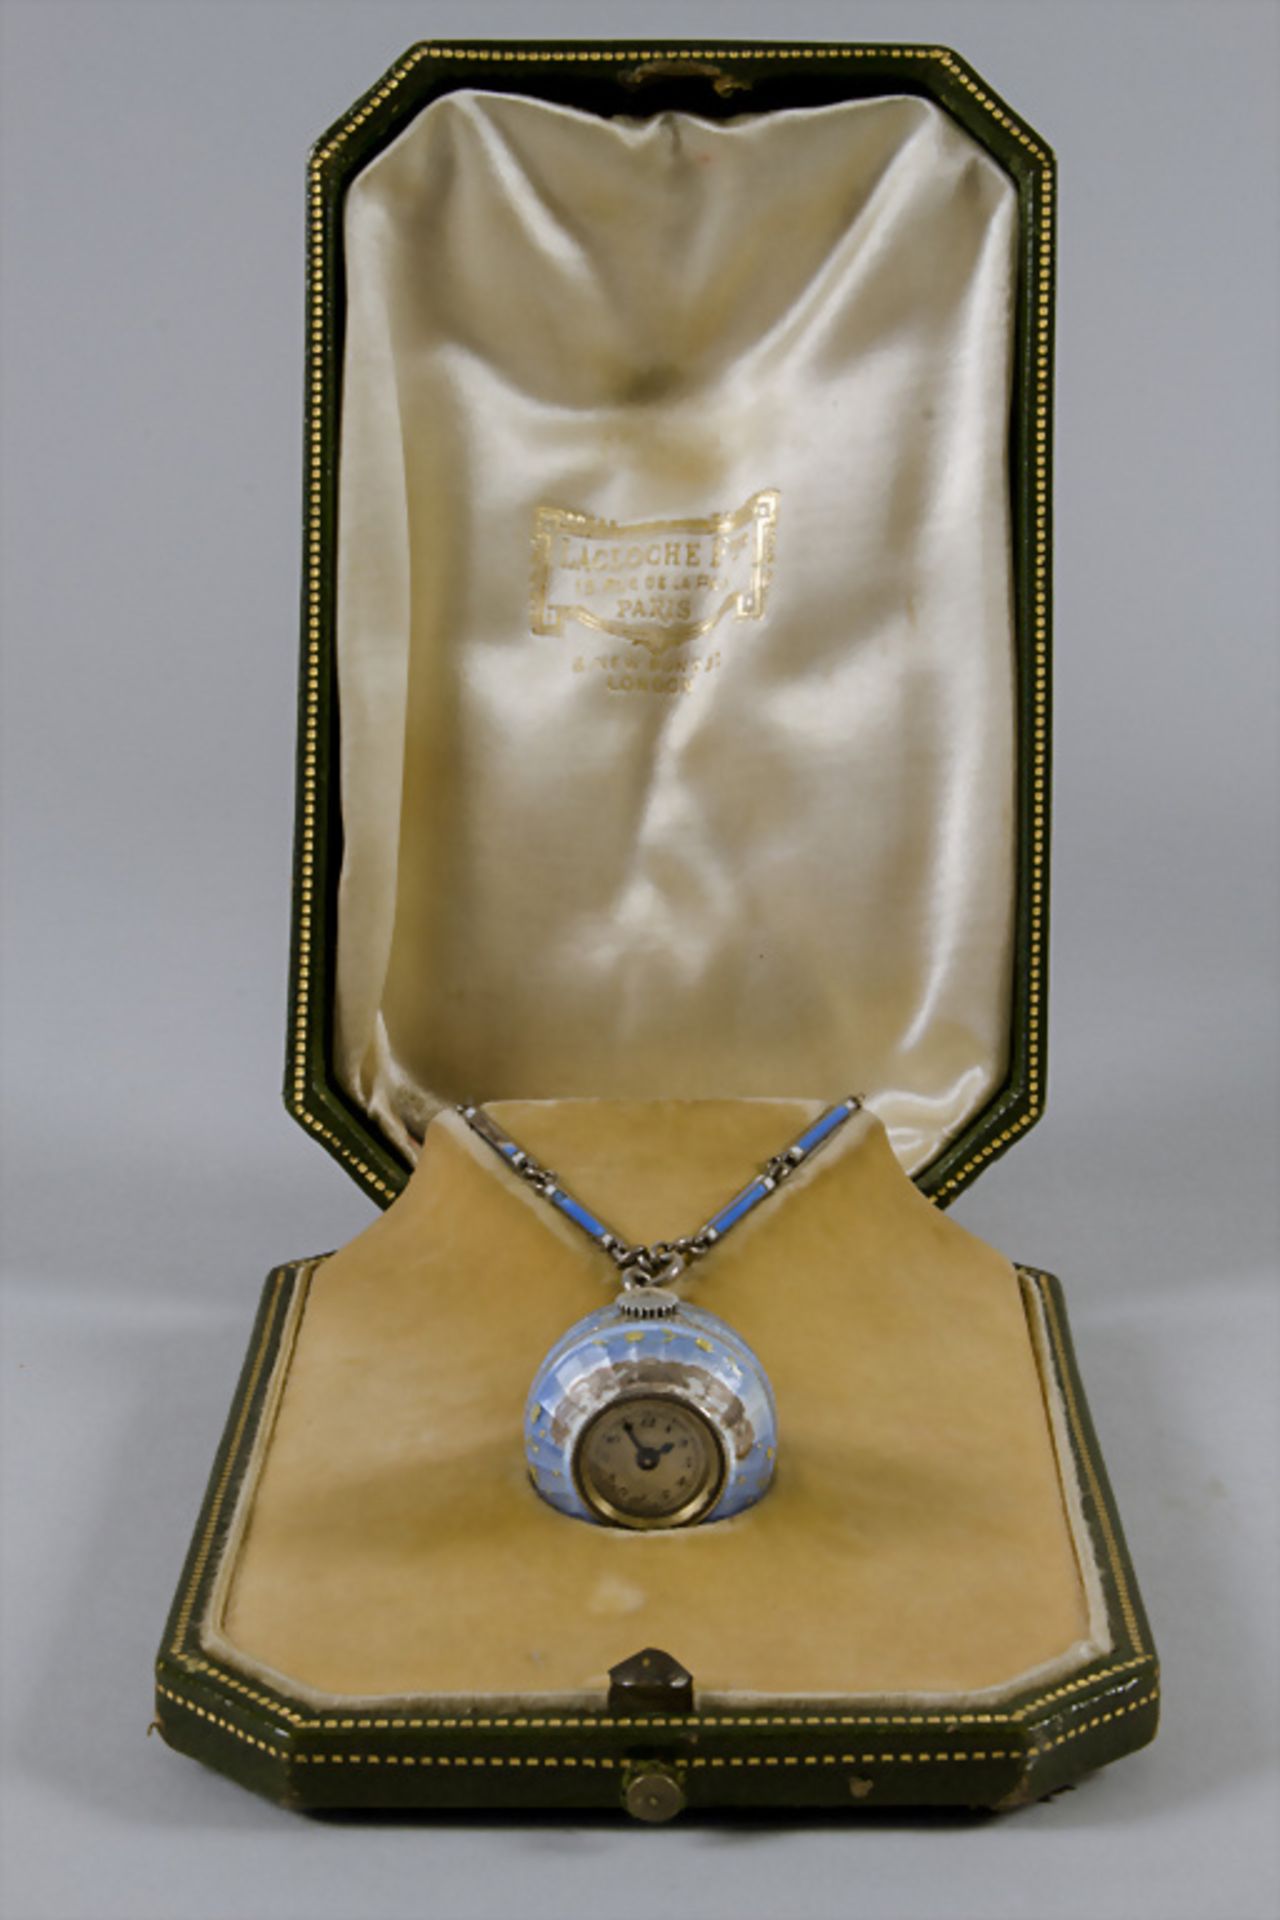 Uhrenanhänger 'Genfer Ei' / A watch pendant 'Boulle de Geneve', Lacloche Frères, Paris, ab 1912 - Image 5 of 5